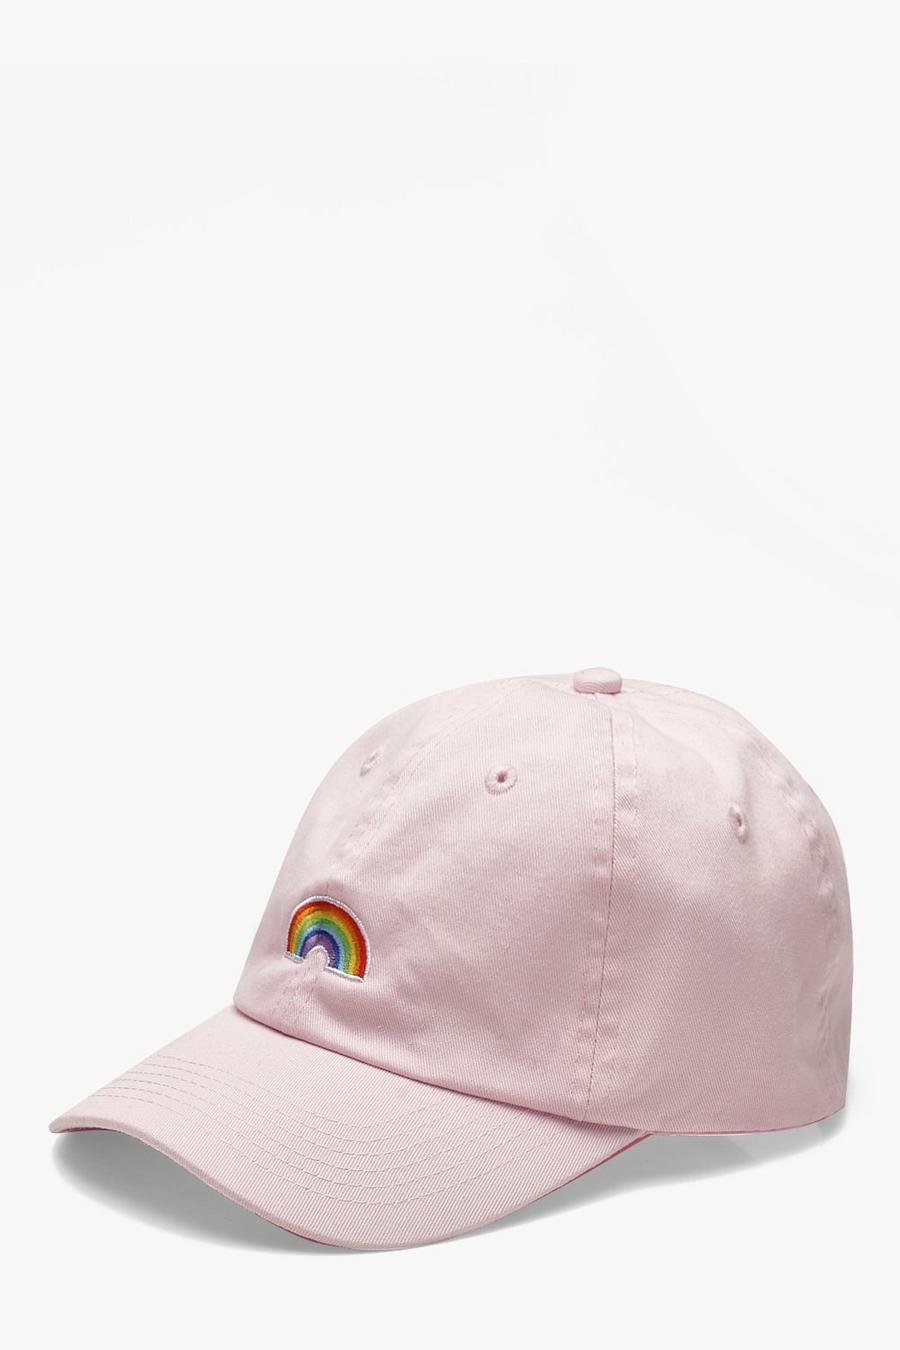 Gorra con bordado de arco Pride image number 1